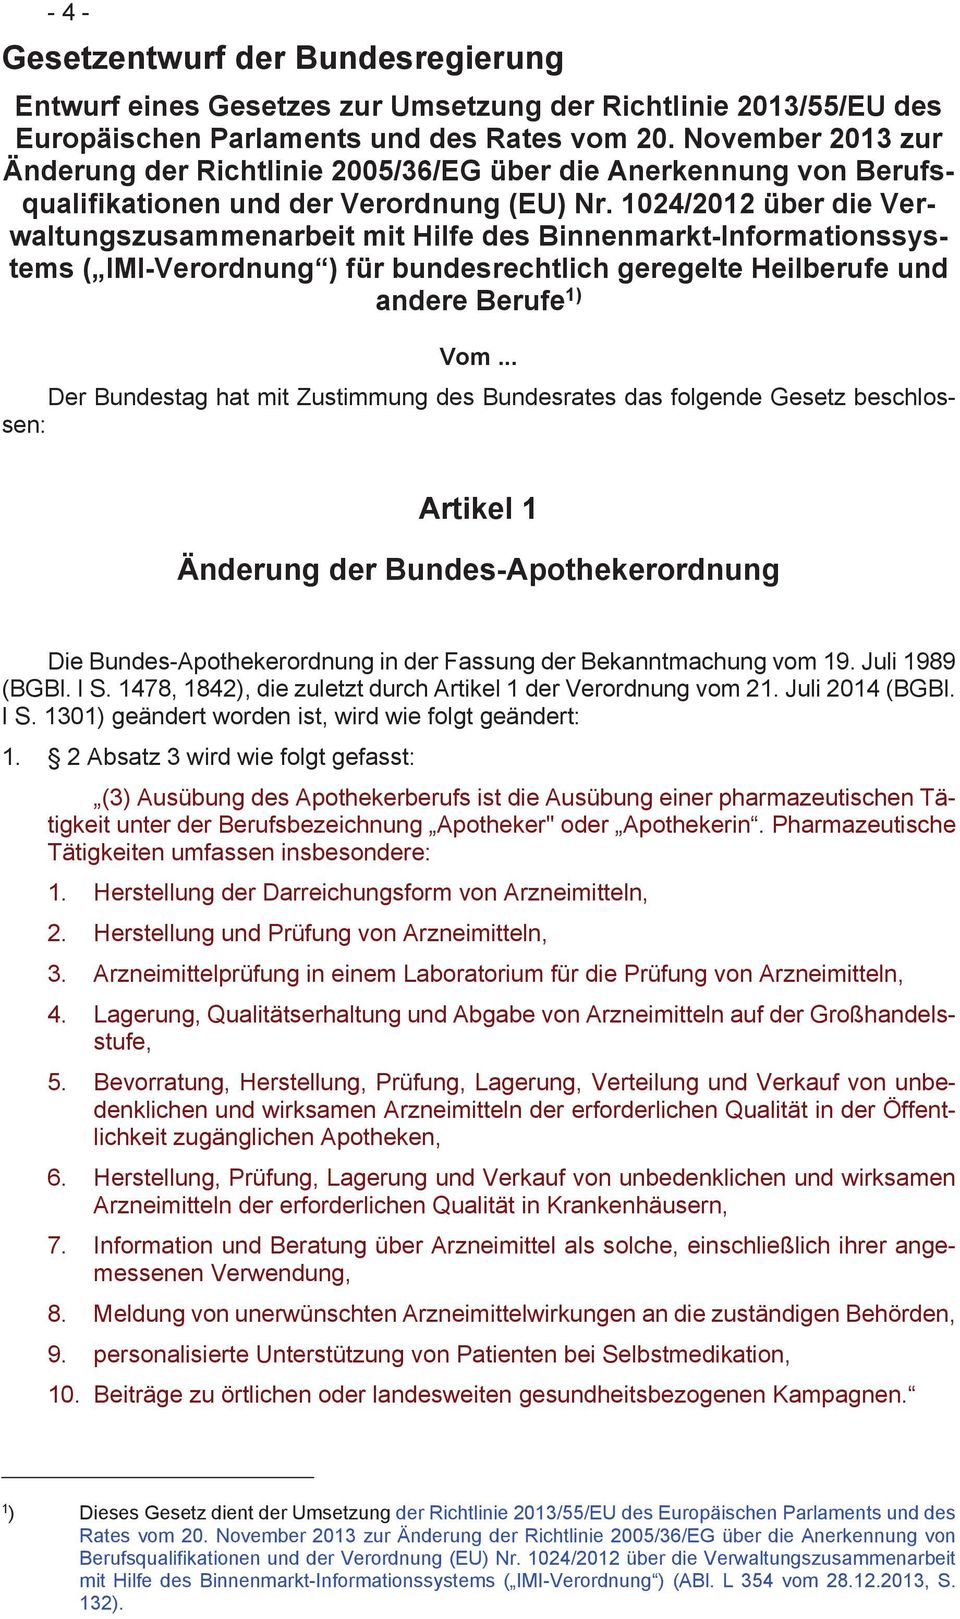 1024/2012 über die Verwaltungszusammenarbeit mit Hilfe des Binnenmarkt-Informationssystems ( IMI-Verordnung ) für bundesrechtlich geregelte Heilberufe und andere Berufe 1) Vom.